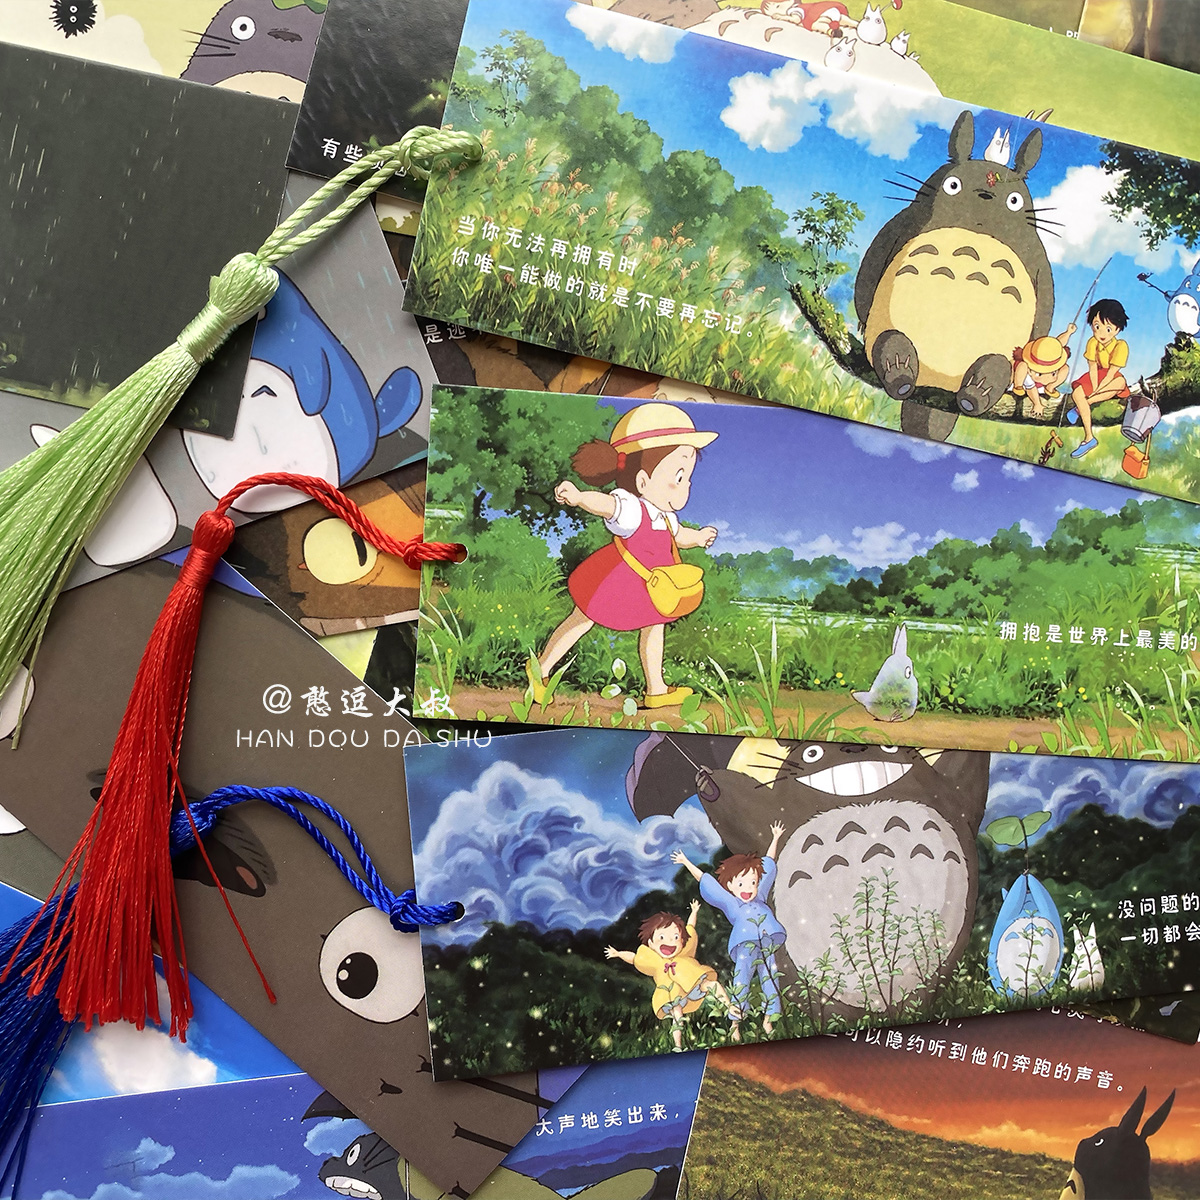 可爱动漫宫崎骏龙猫书签电影胶片周边人物二次元日本日式卡通卡片